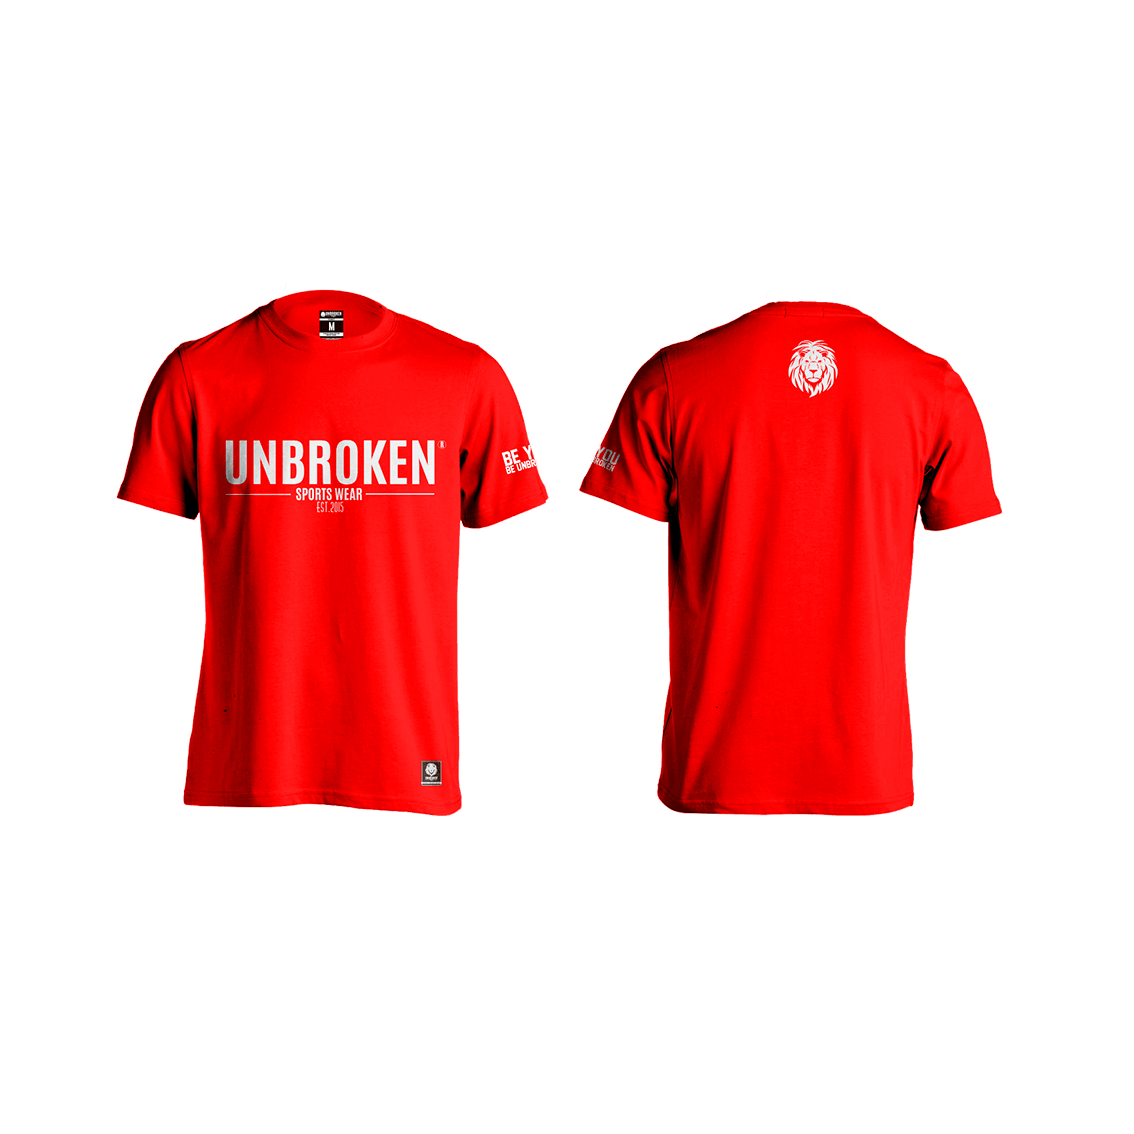 Unbroken Classic Red - Unbroken Sports Wear 